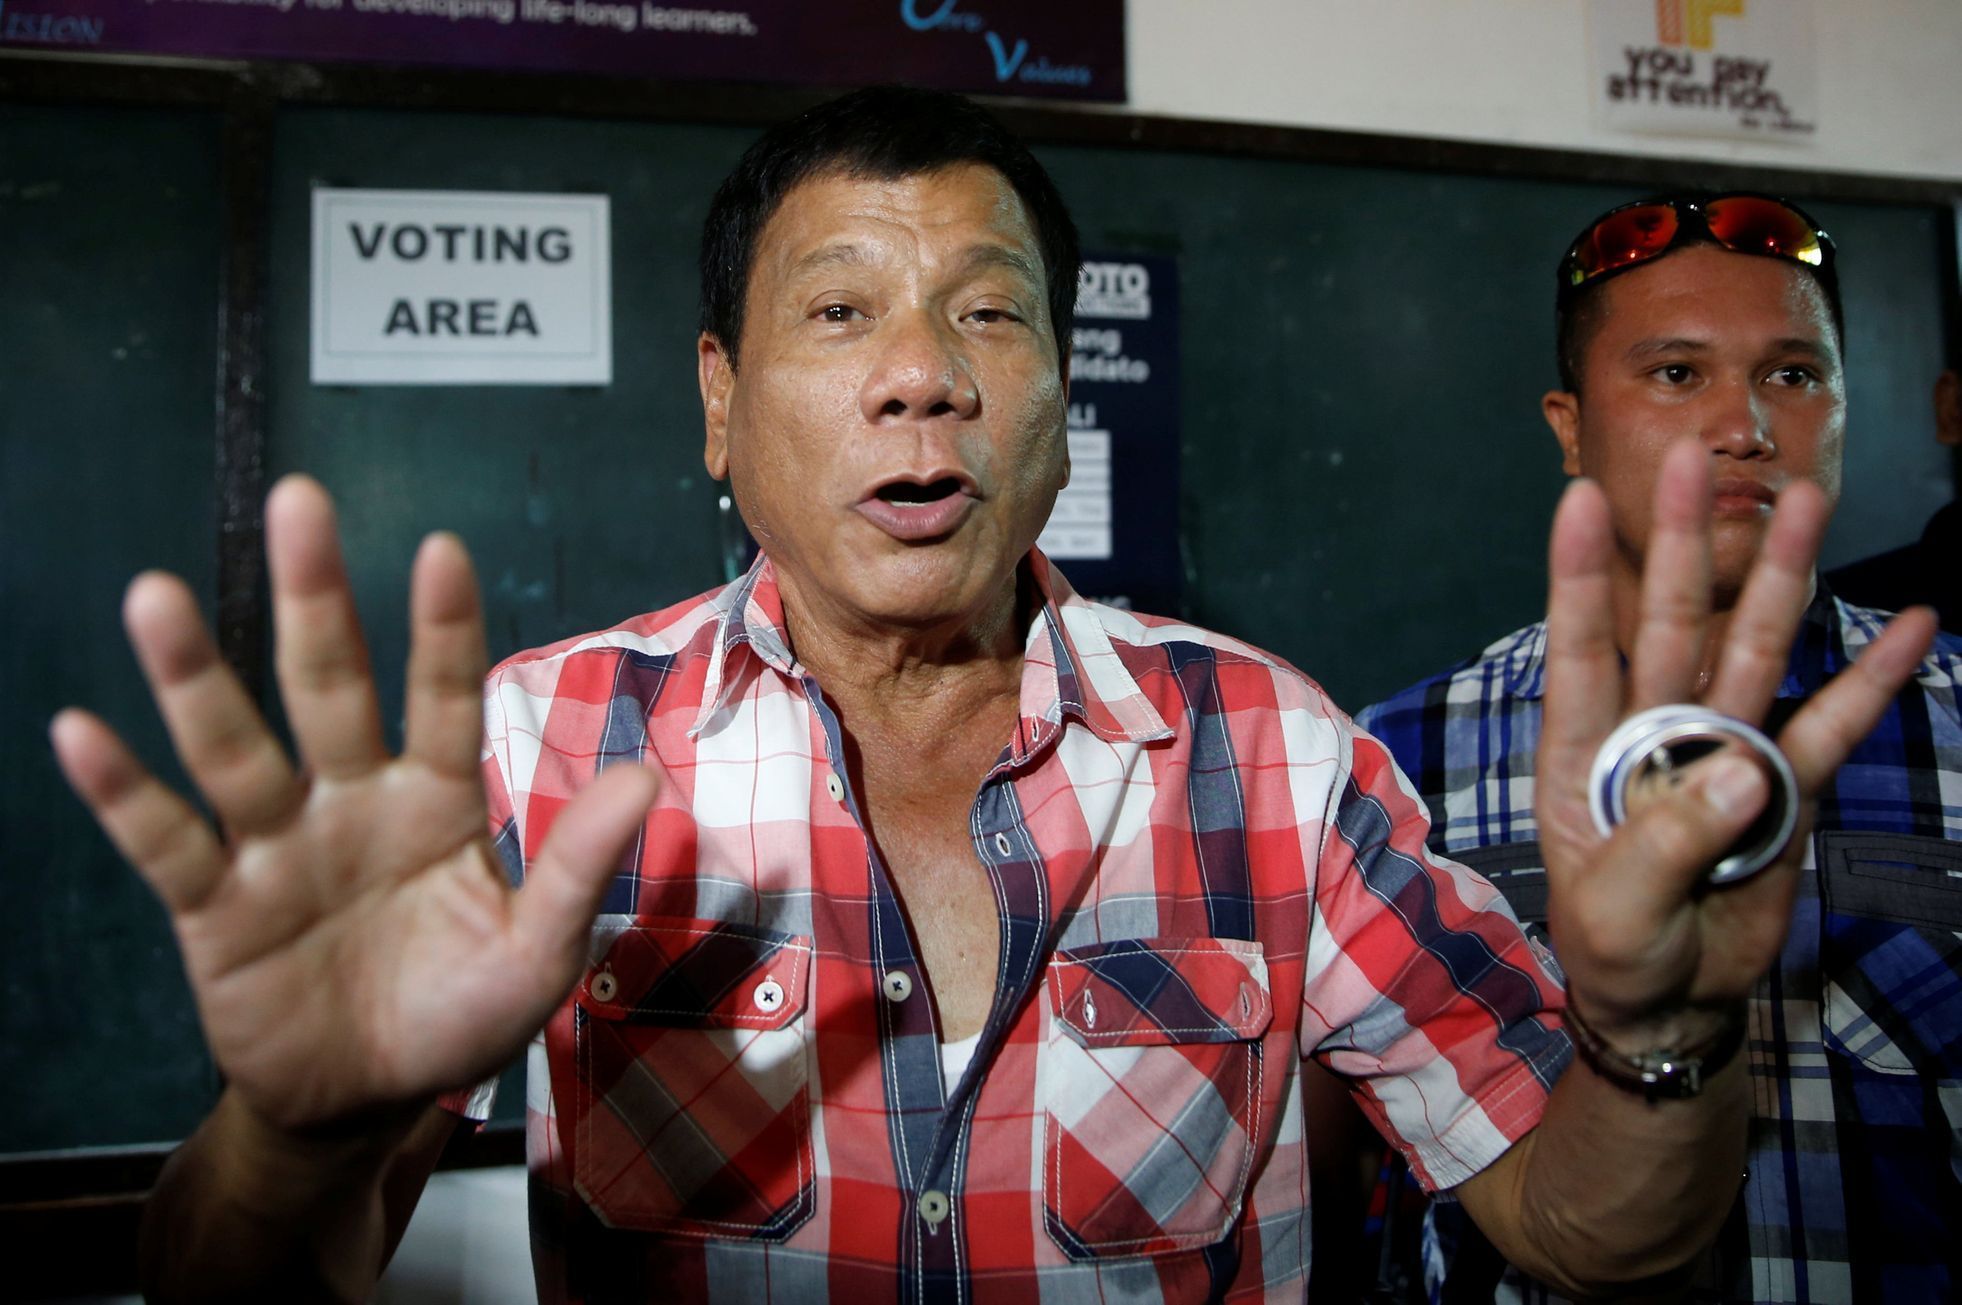 Rodrigo Duterte - nový filipínský prezident